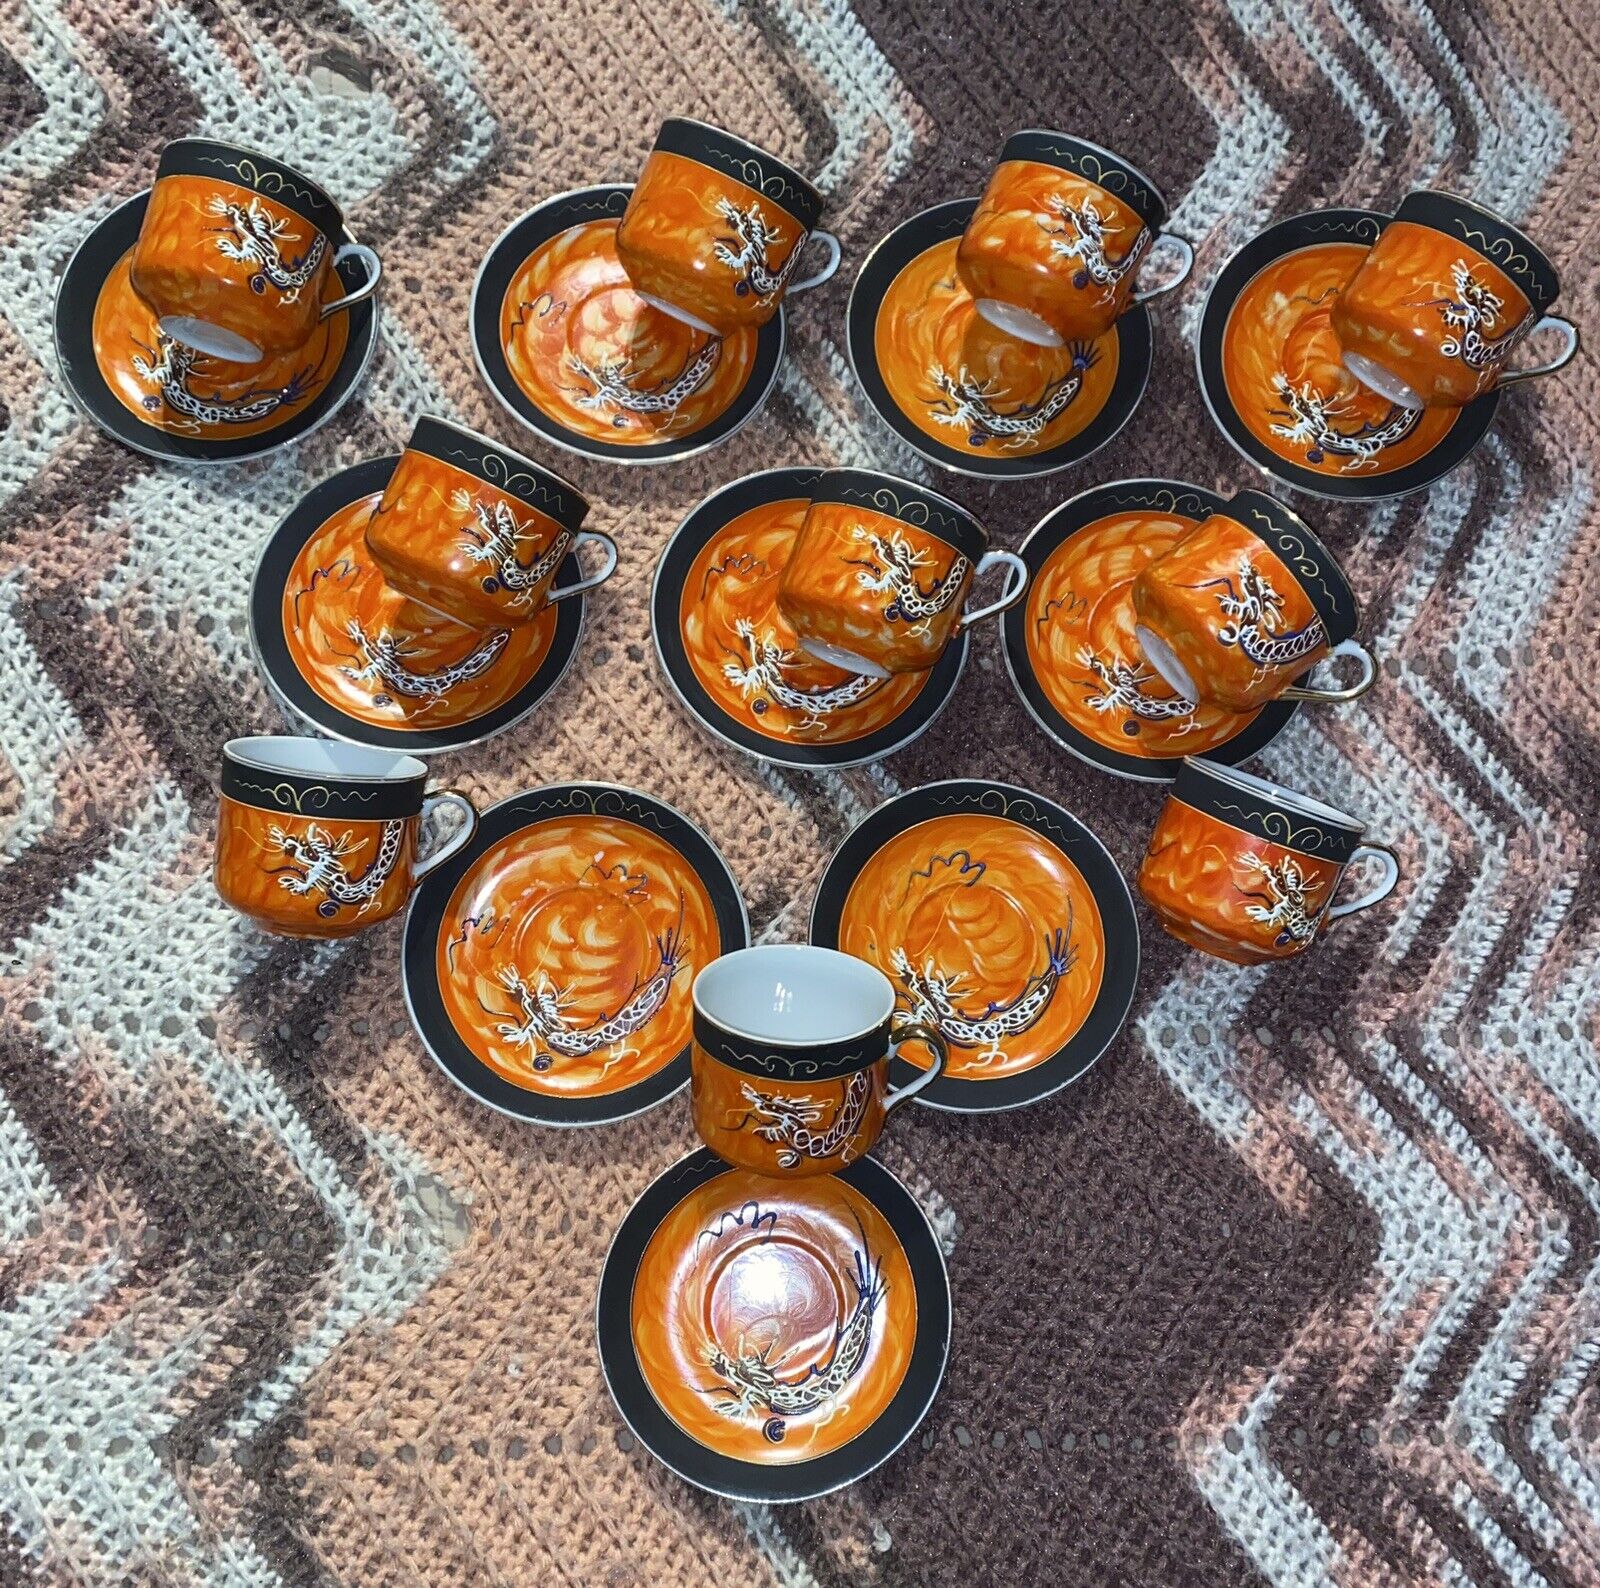 Antique Dragon Tea Cup & Saucer Set Orange With Geisha Inlay 10 Cups 10 Saucers